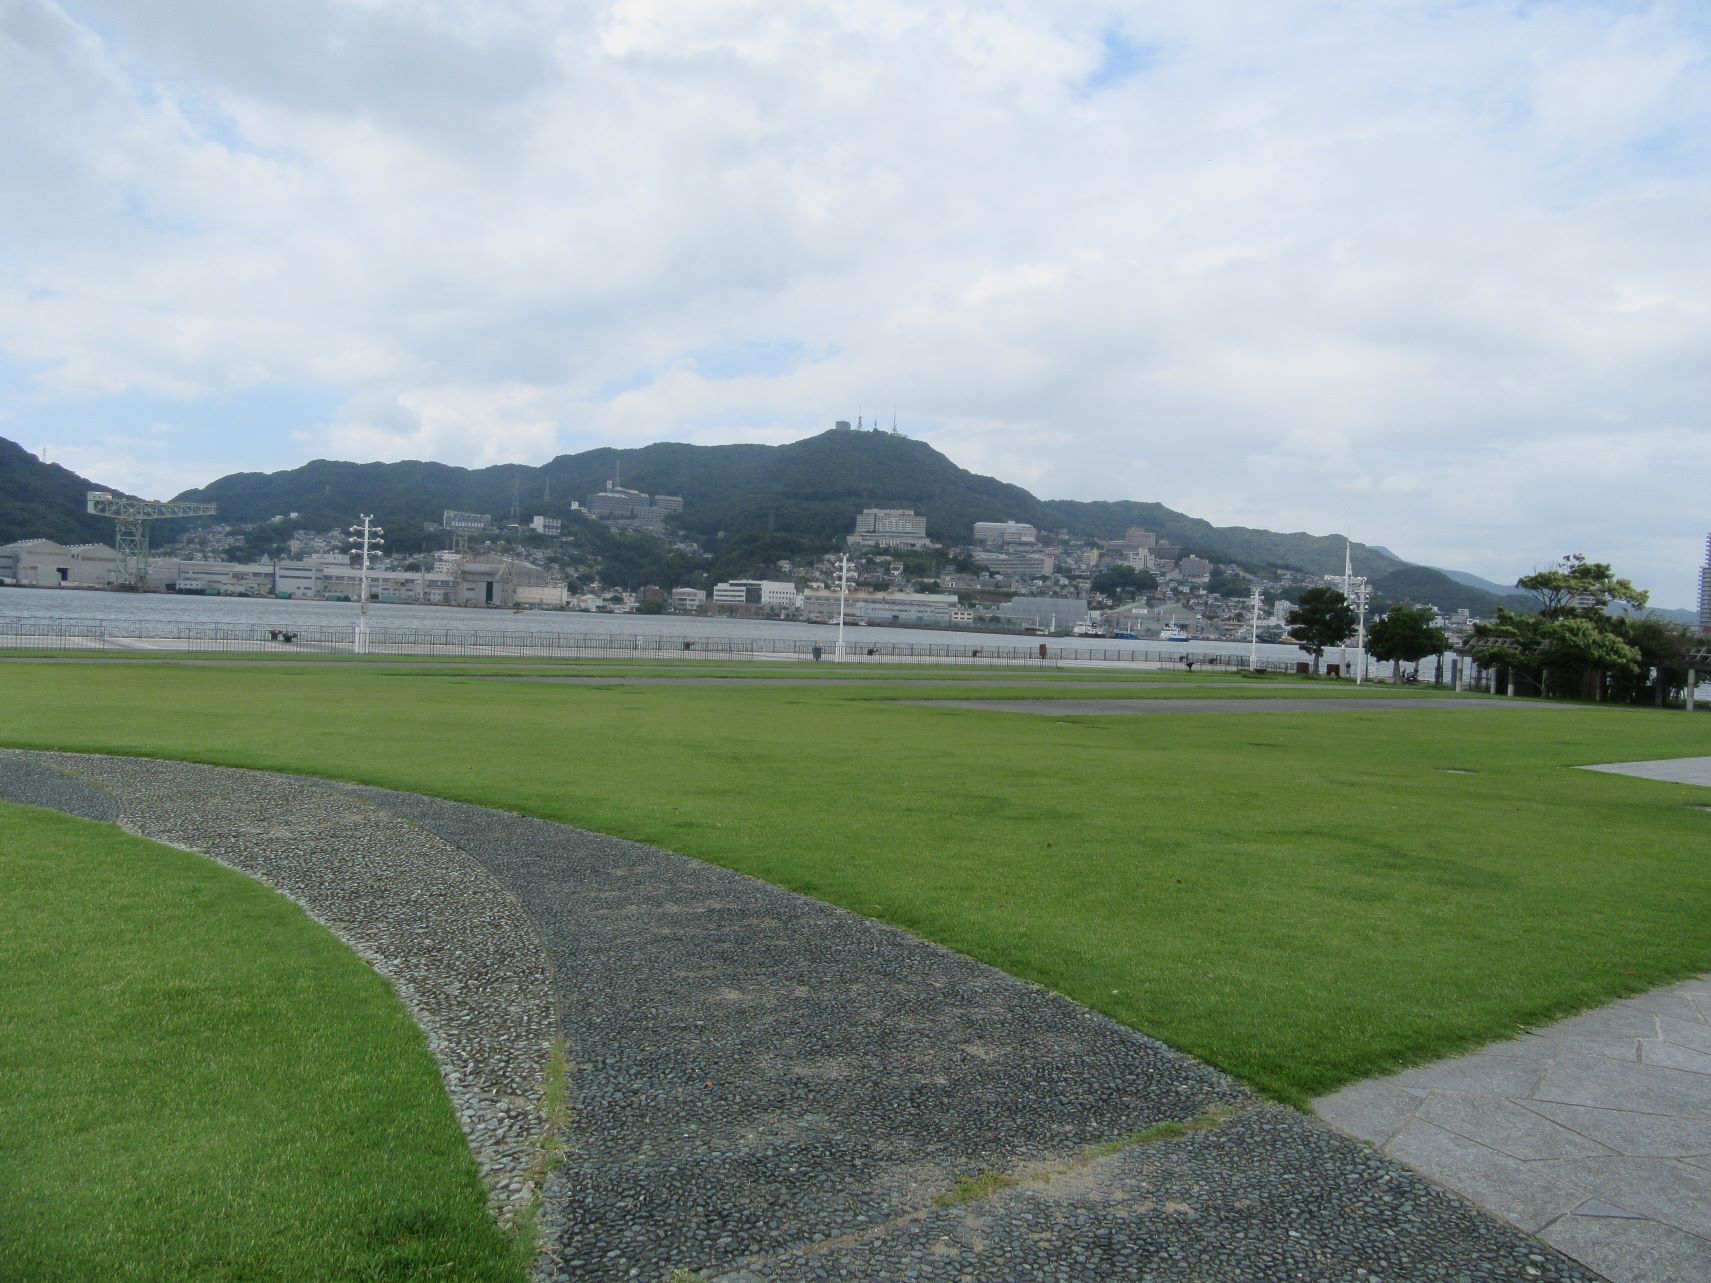 長崎市・長崎水辺の森公園の風景と、背景のジャイアント・カンチレバークレーンや稲佐山。